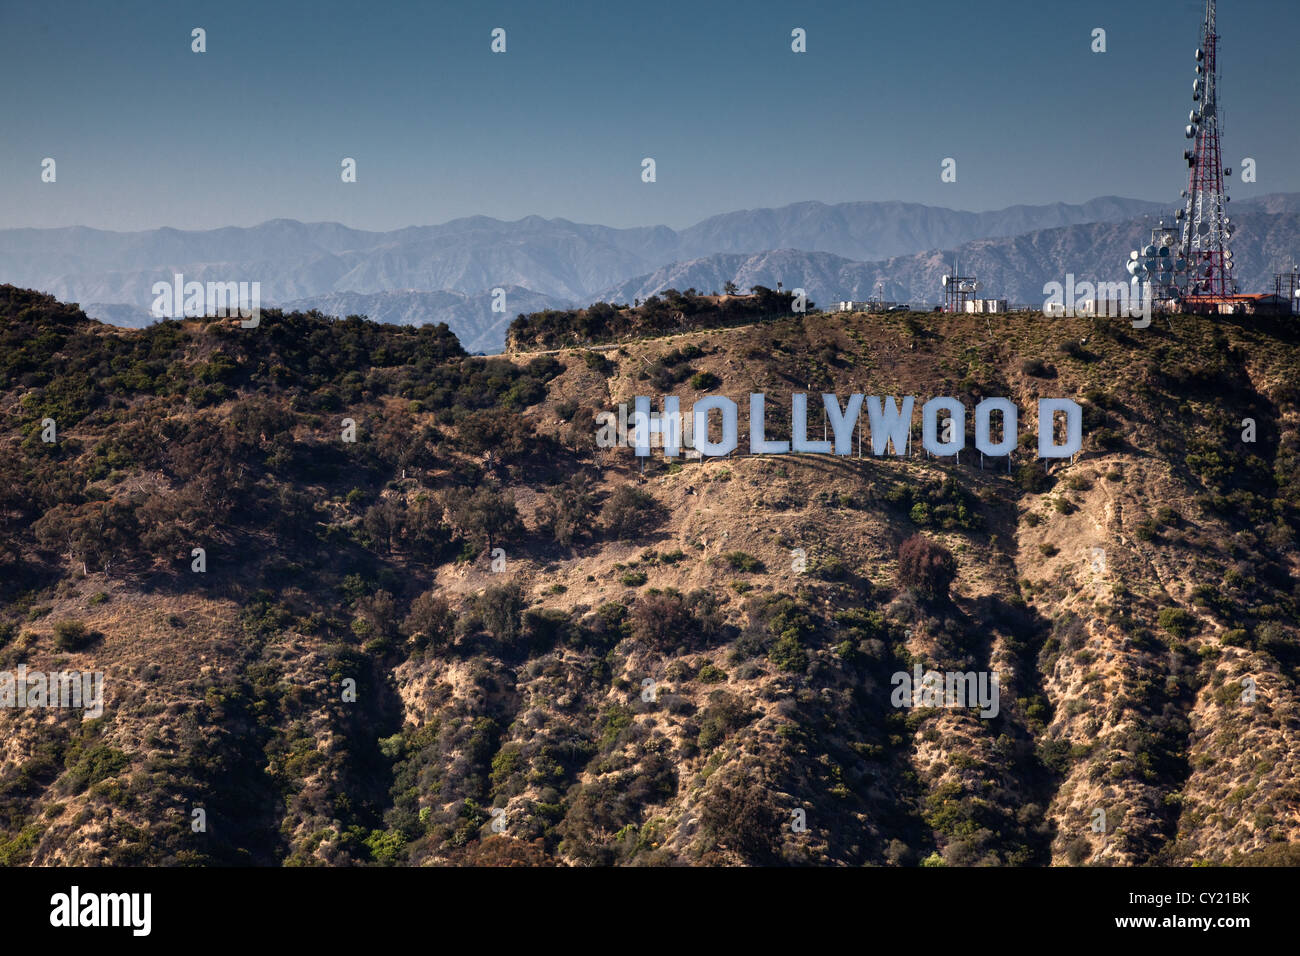 Le célèbre panneau Hollywood à Hollywood Hills, Los Angeles. Banque D'Images